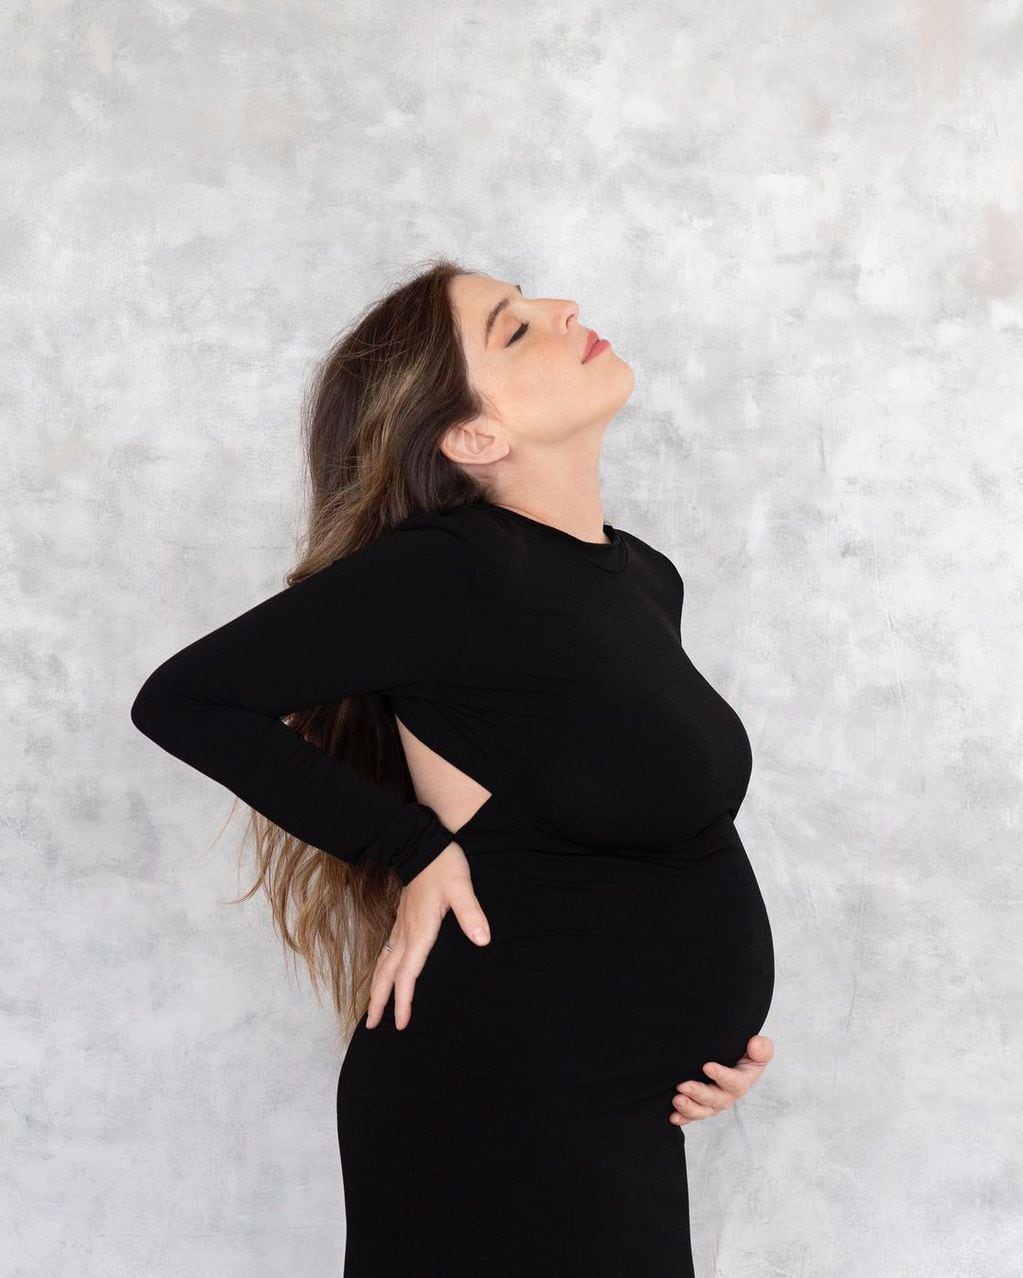 Dalma Maradona hizo una producción de fotos con su pancita de 7 meses y medio de embarazo